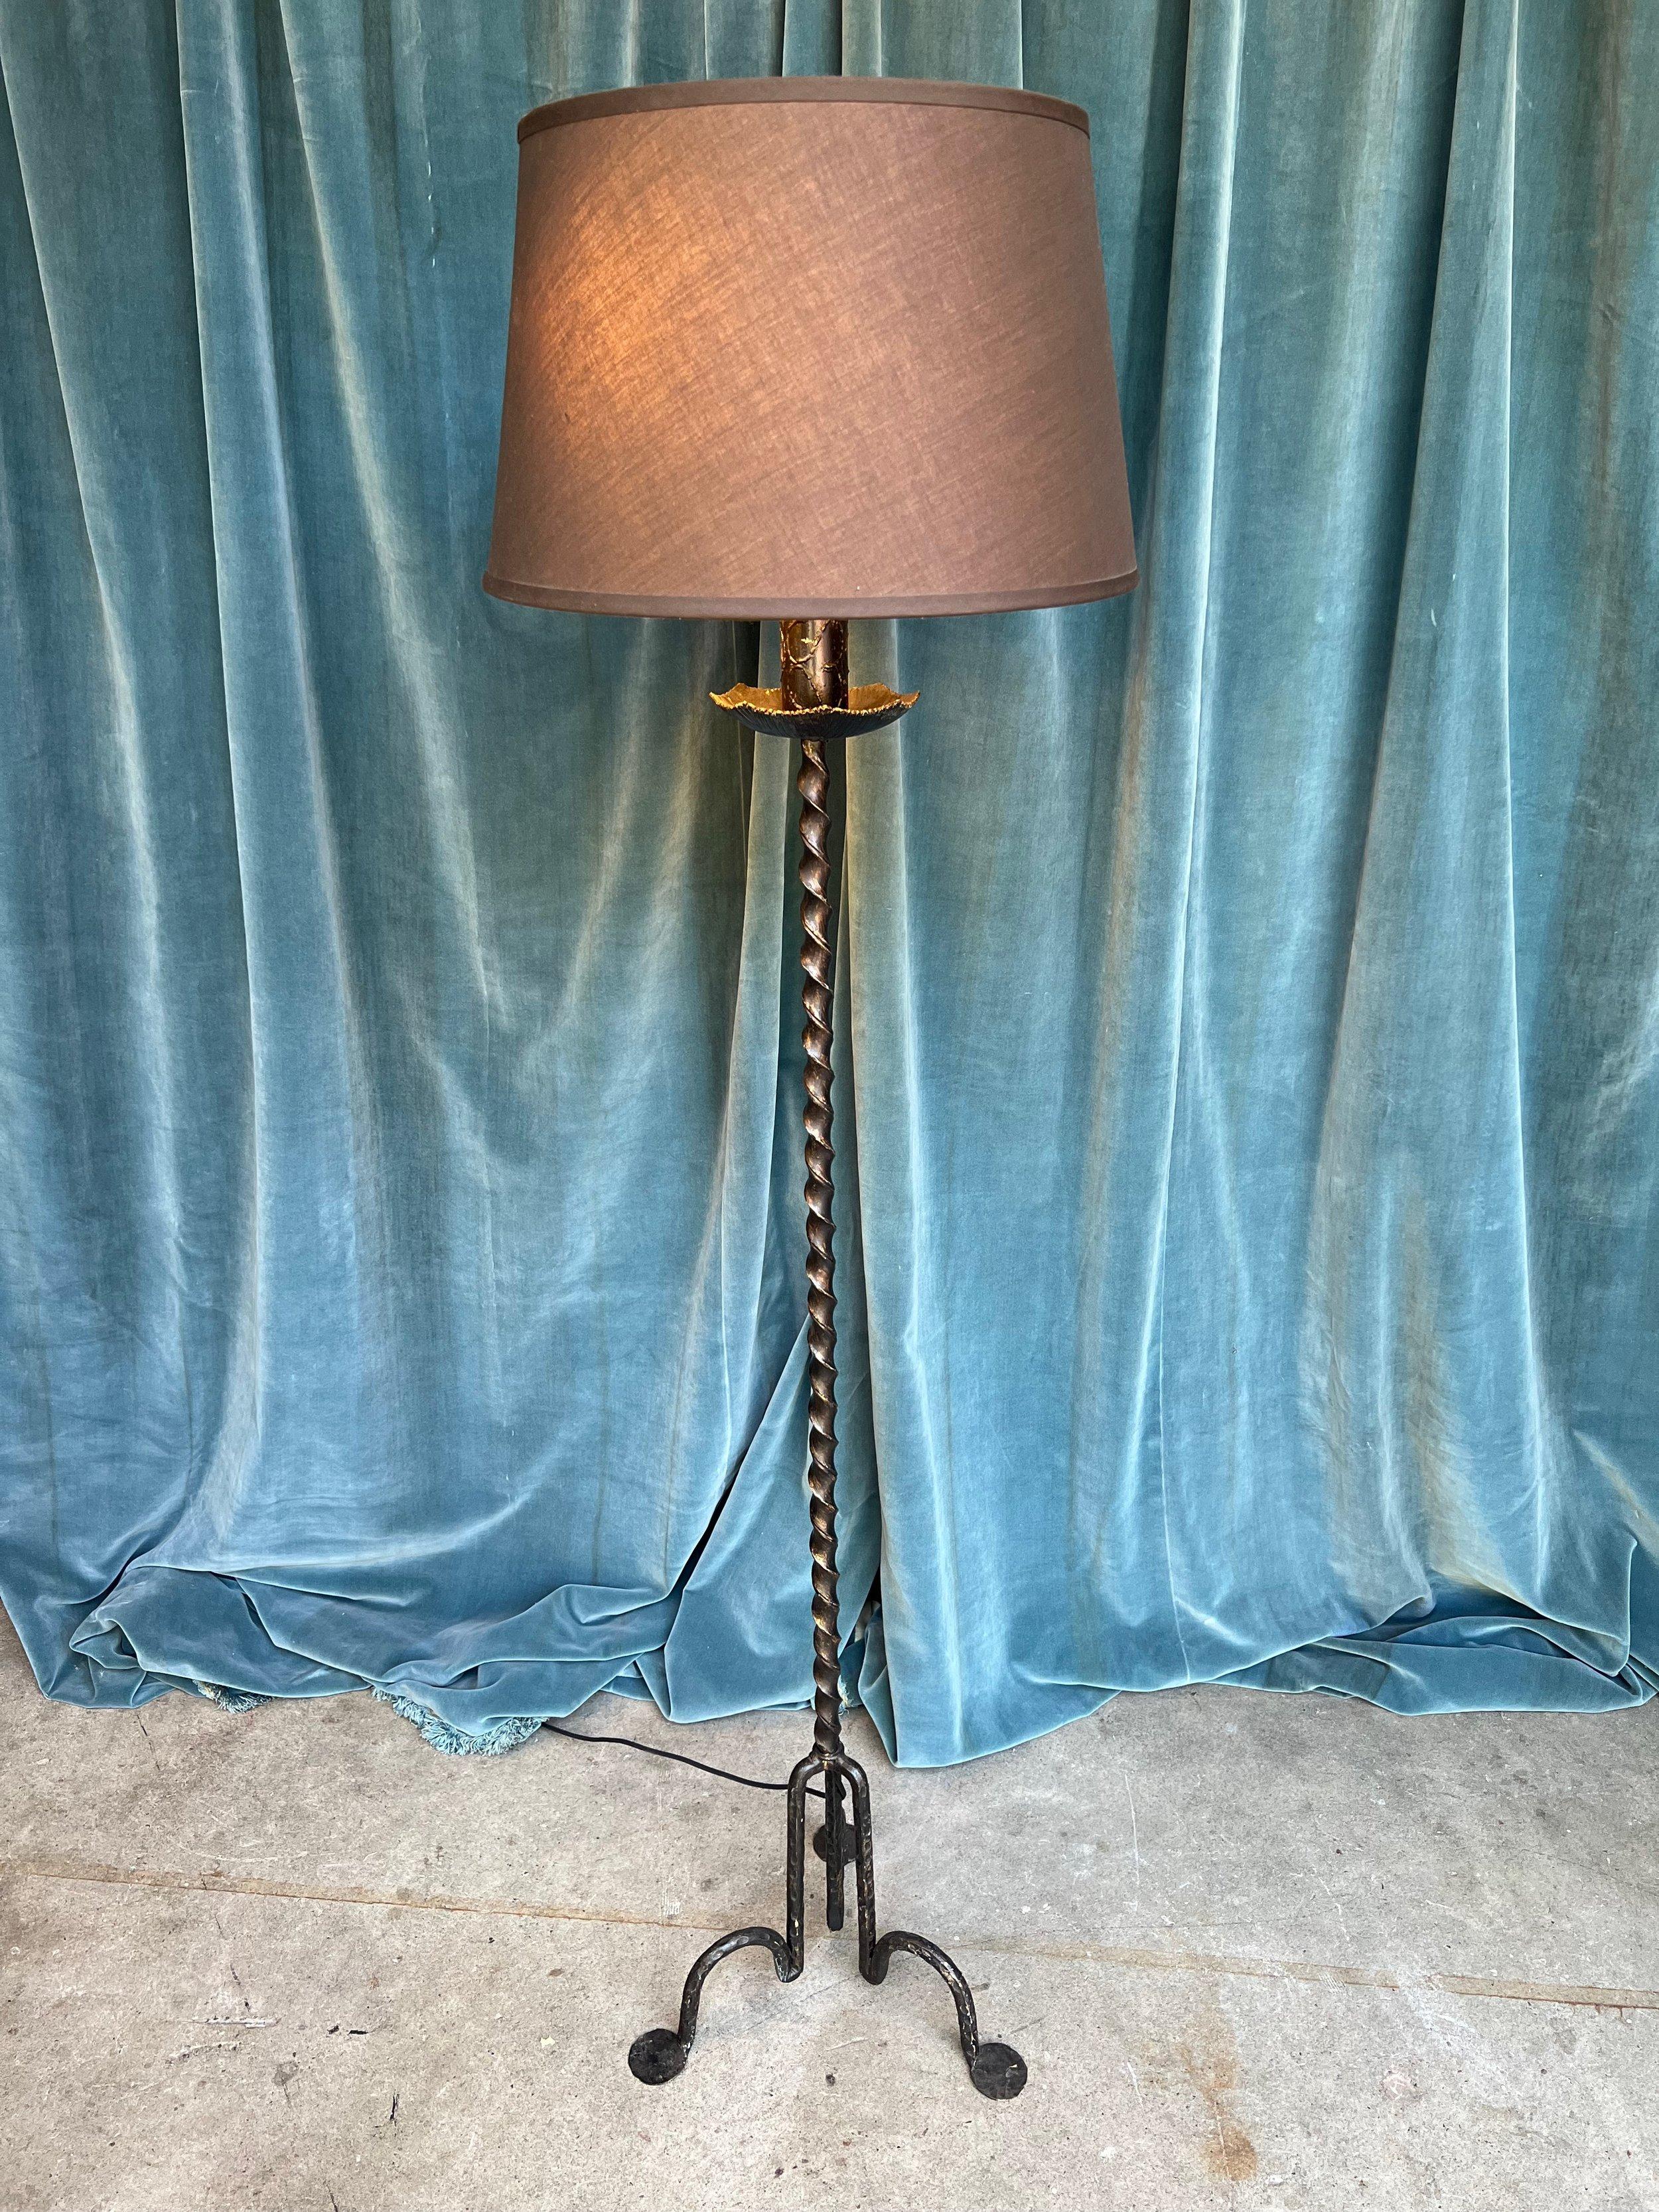 Un inhabituel lampadaire espagnol des années 1950 en fer forgé peint en noir, dans un style moderniste captivant. La tige centrale torsadée est montée sur une base géométrique en trépied avec des pieds solides et prononcés, reflétant l'artisanat